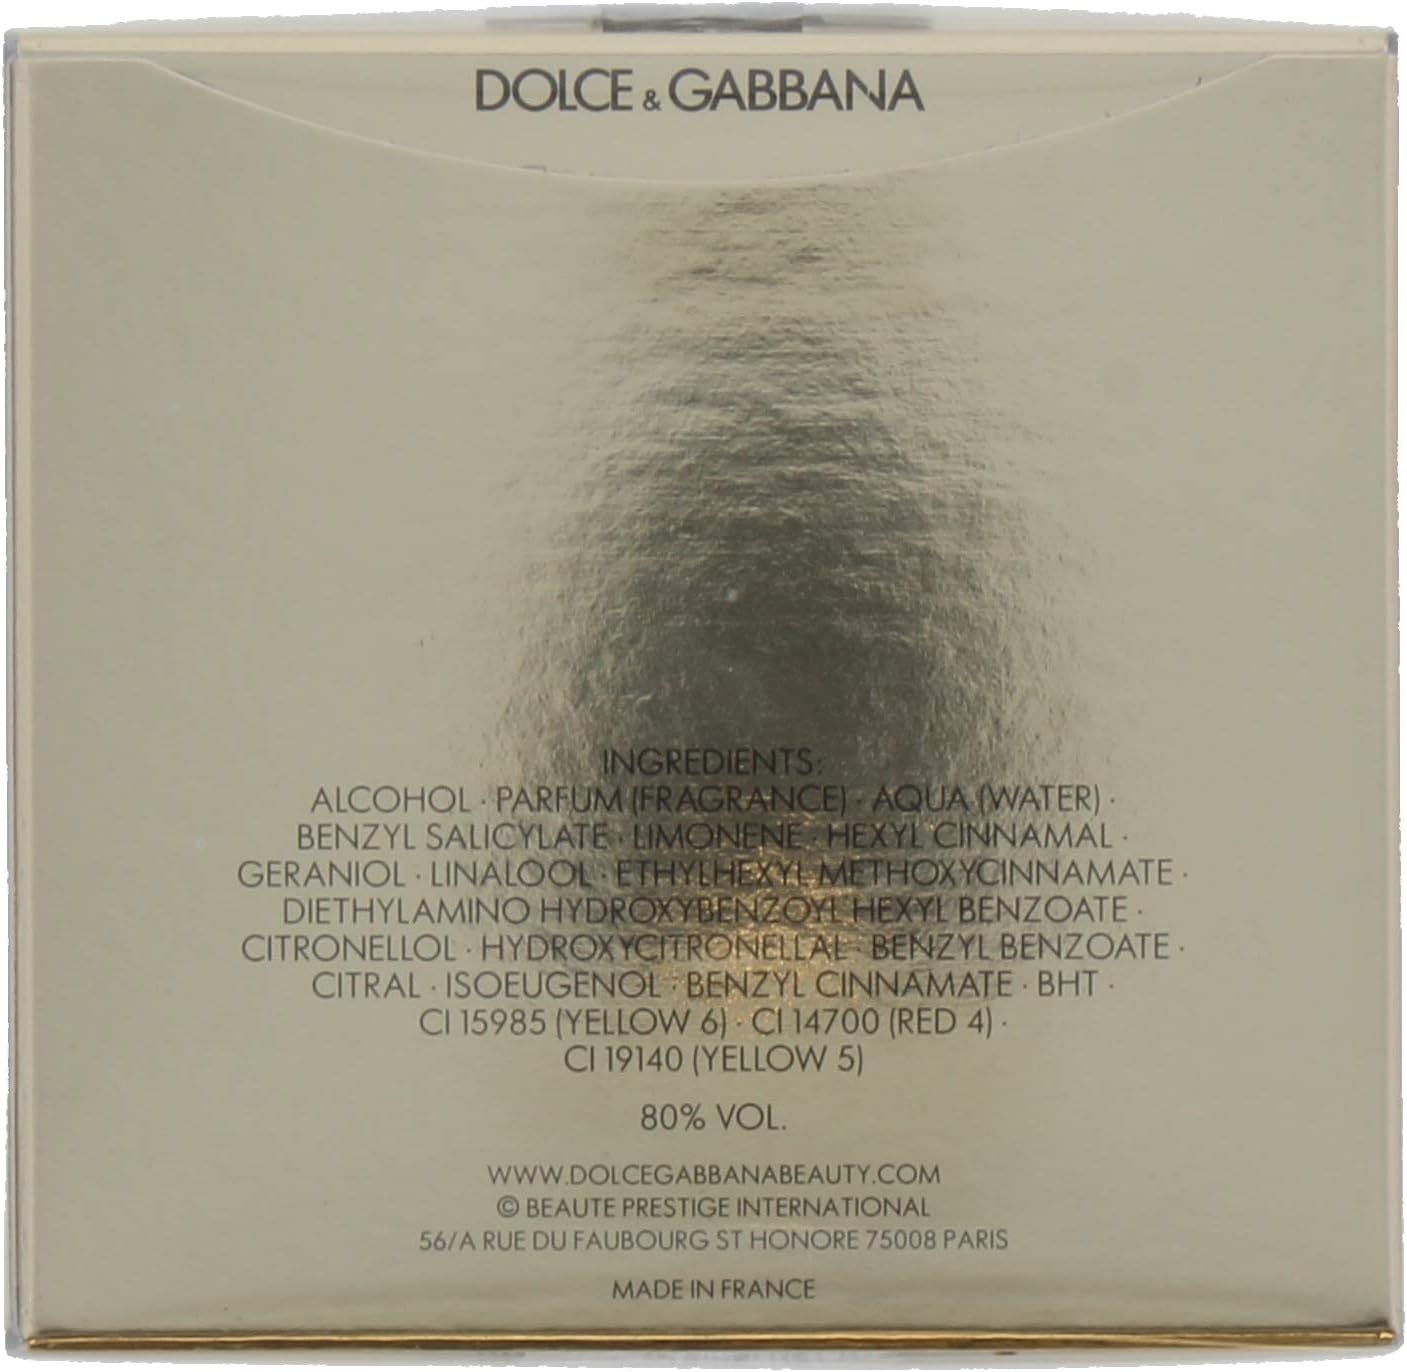 ادکلن زنانه دولچه گابانا مدل The One by Dolce  Gabbana 75 ml - ارسال 10 الی 15 روز کاری